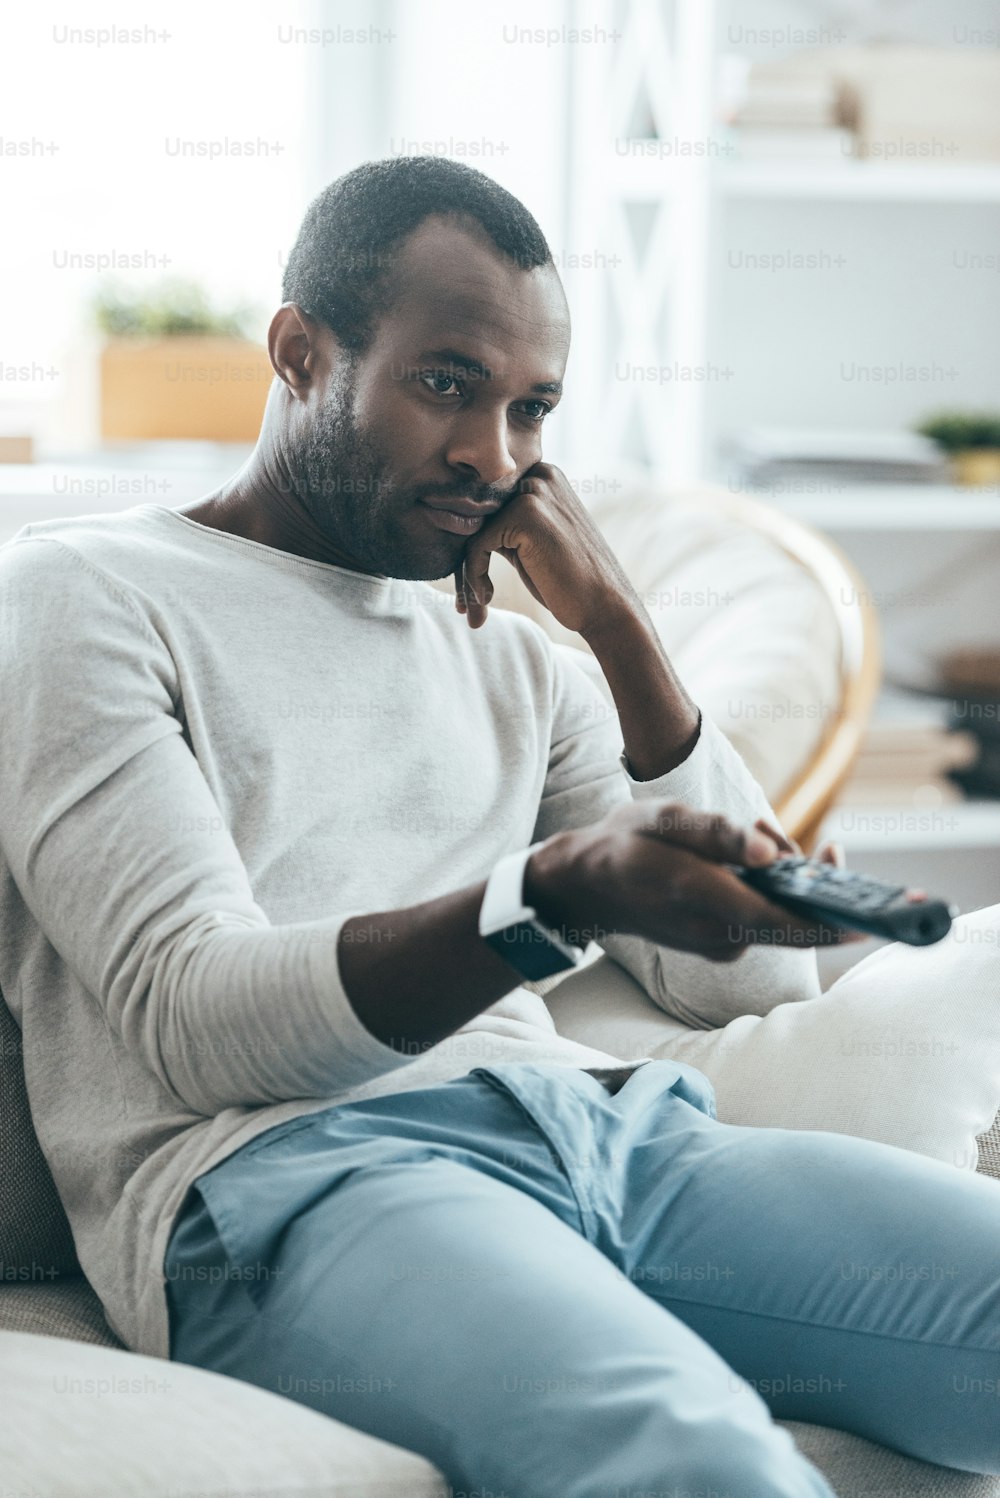 Apuesto joven africano sosteniendo un control remoto mientras está sentado en el sofá de su casa